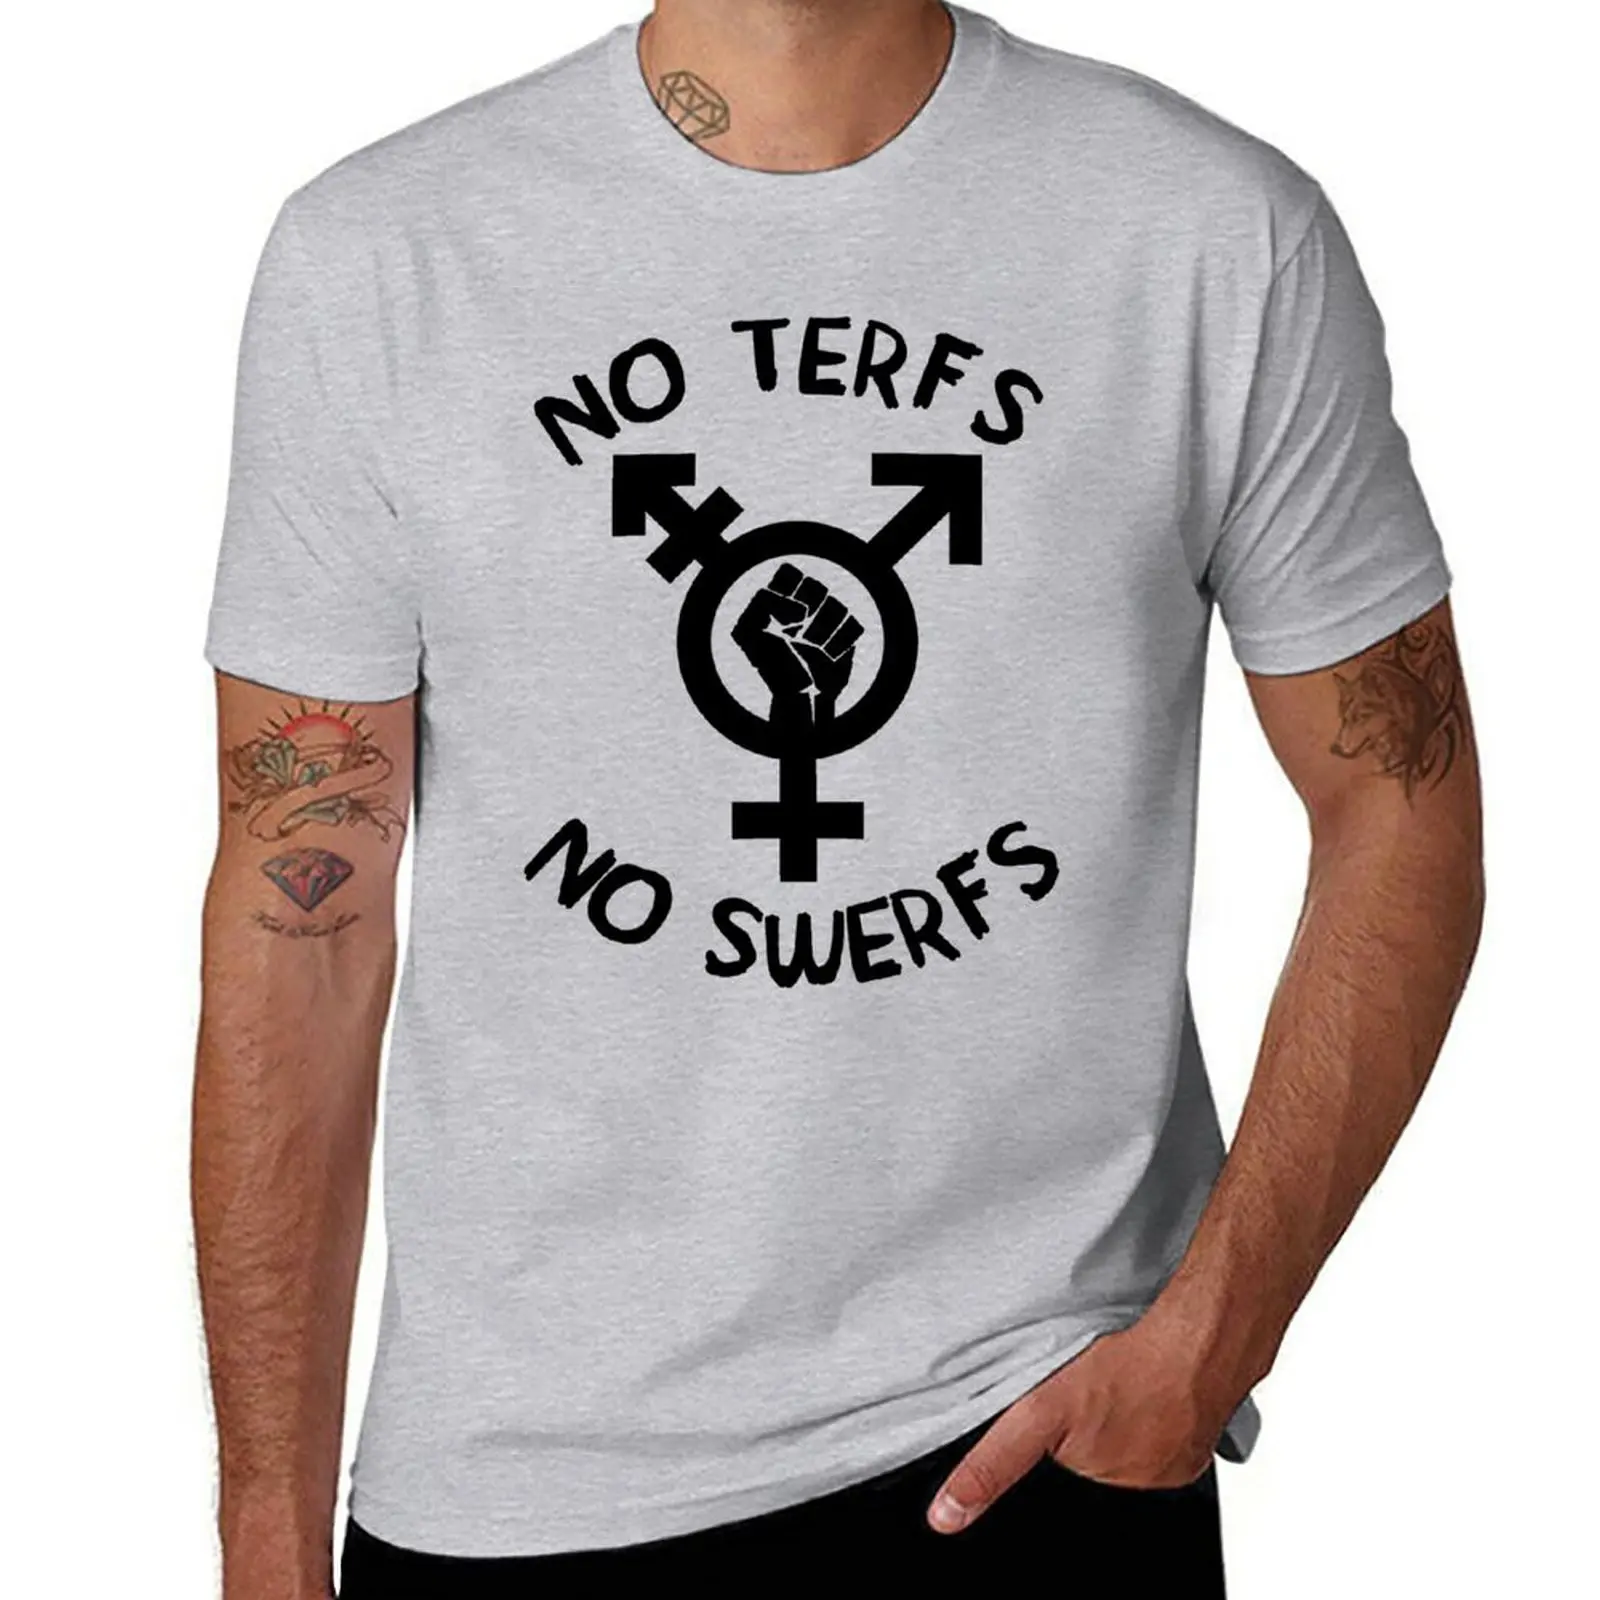 Новые футболки No TERFs No SWERFs - ЛГБТК Трансгендерные Секс-работники, Блузки, футболки, простые футболки, Мужские футболки Изображение 0